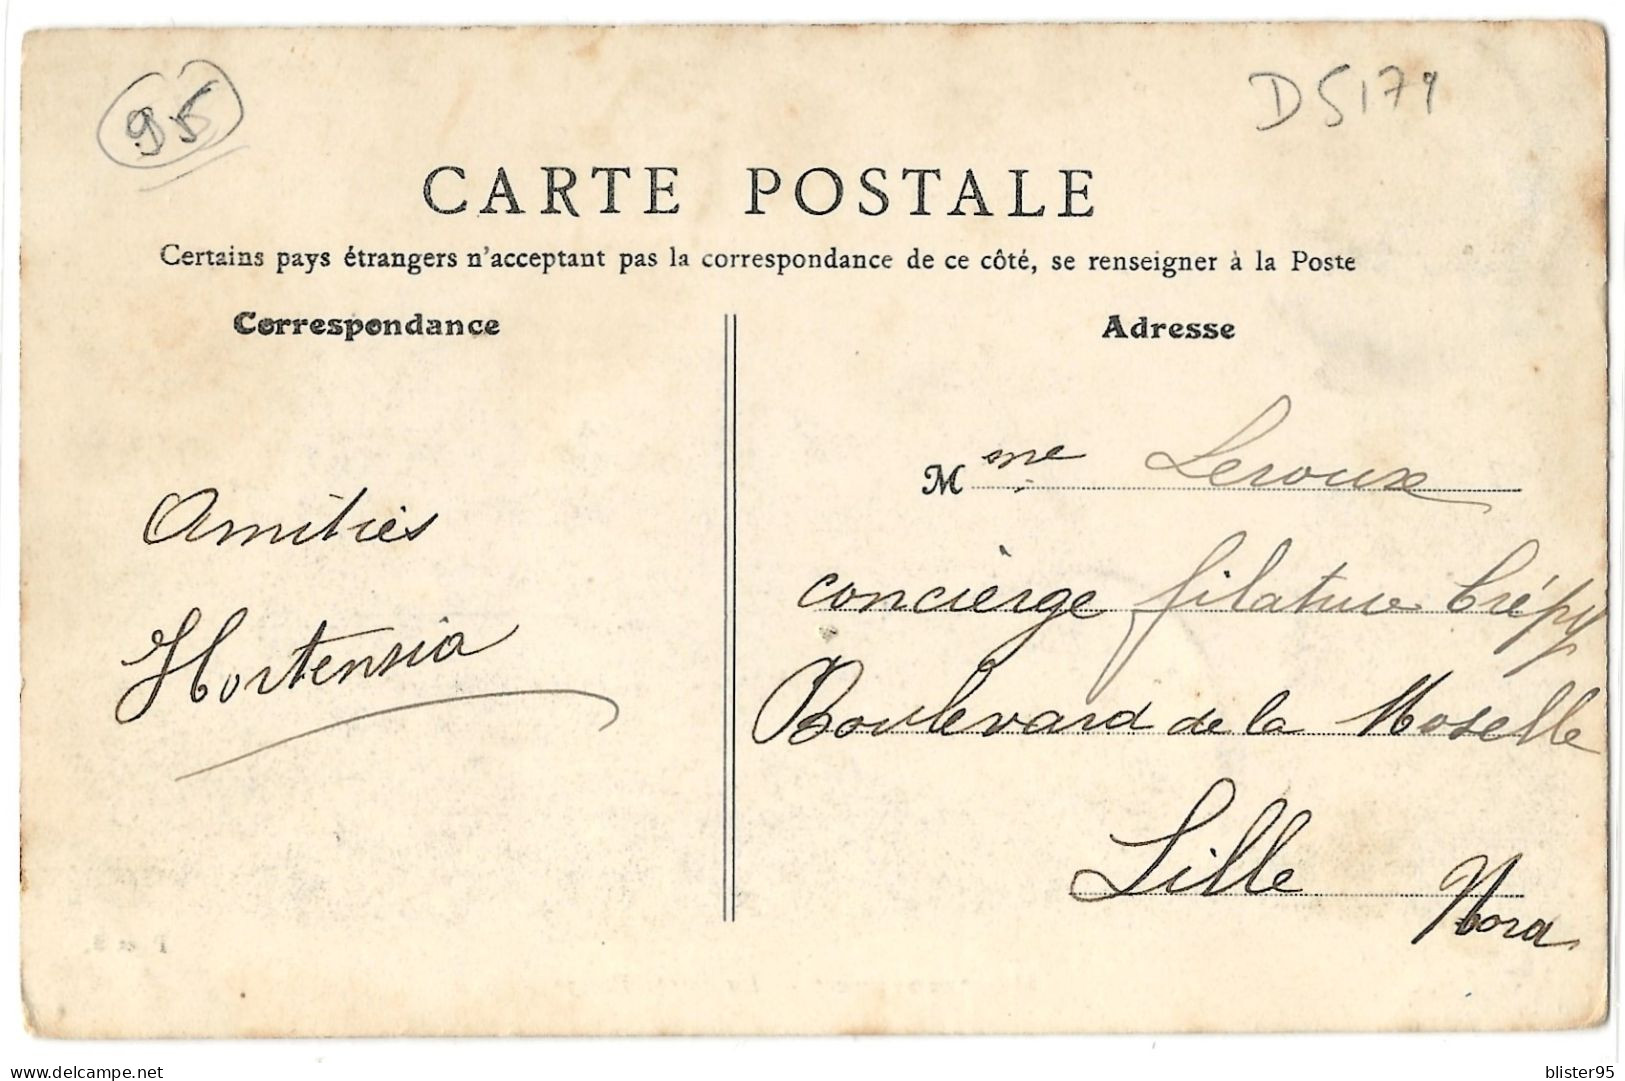 Montmorency (95) La Porte Rouge , Envoyée En 1908 - Montmorency